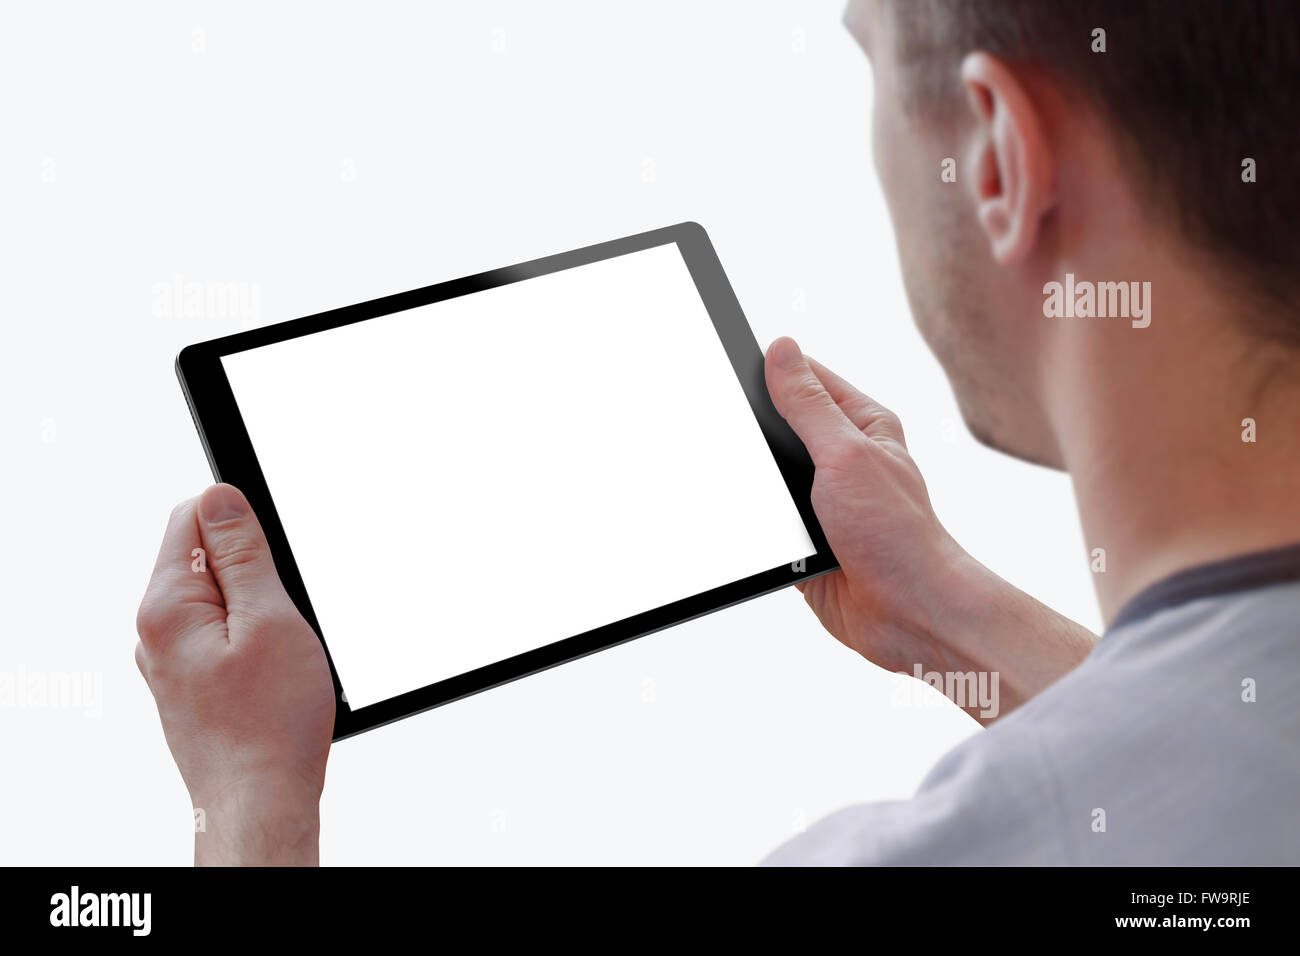 Tablette avec écran isolé pour homme dans la maquette des mains. Isolé sur fond blanc. Écran de l'appareil isolé pour la conception, l'interface Banque D'Images